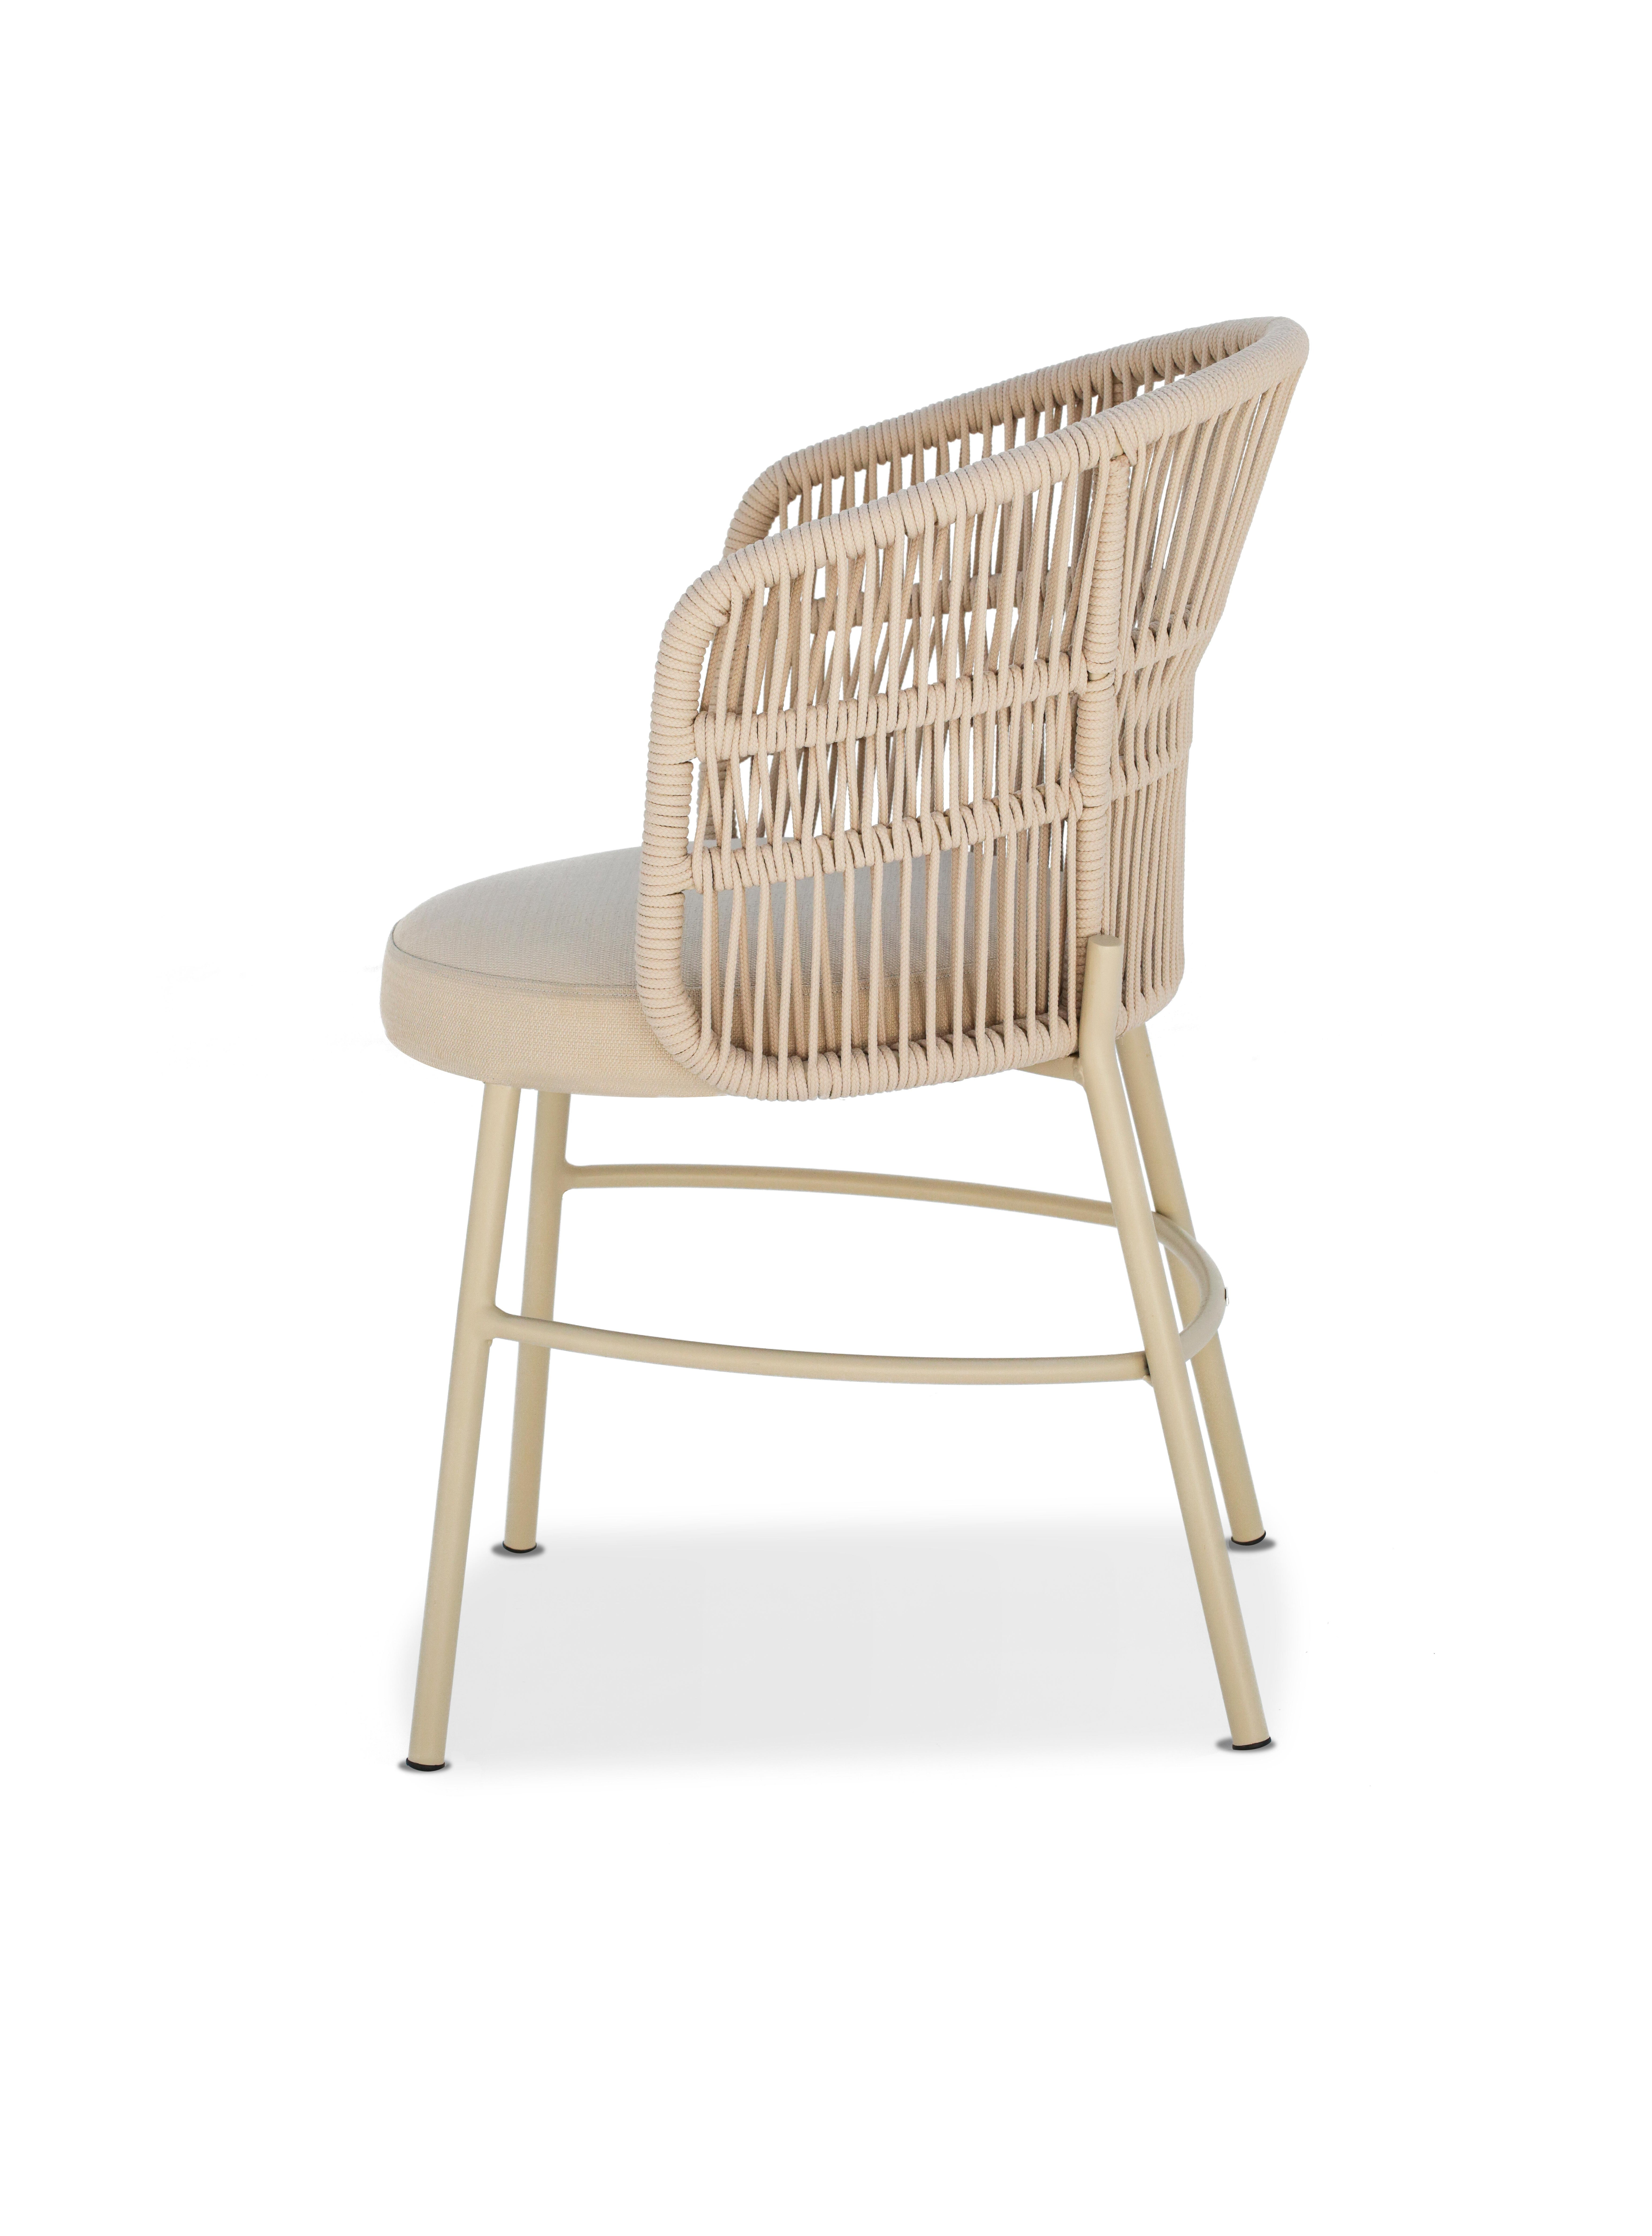 Mit seinen geschwungenen und fließenden Formen ist das Design des Amalfi-Stuhls von der Natur der italienischen Amalfiküste inspiriert.
Das fließende Design bietet ein klares, zeitloses Design, das sich leicht mit anderen Umgebungen kombinieren